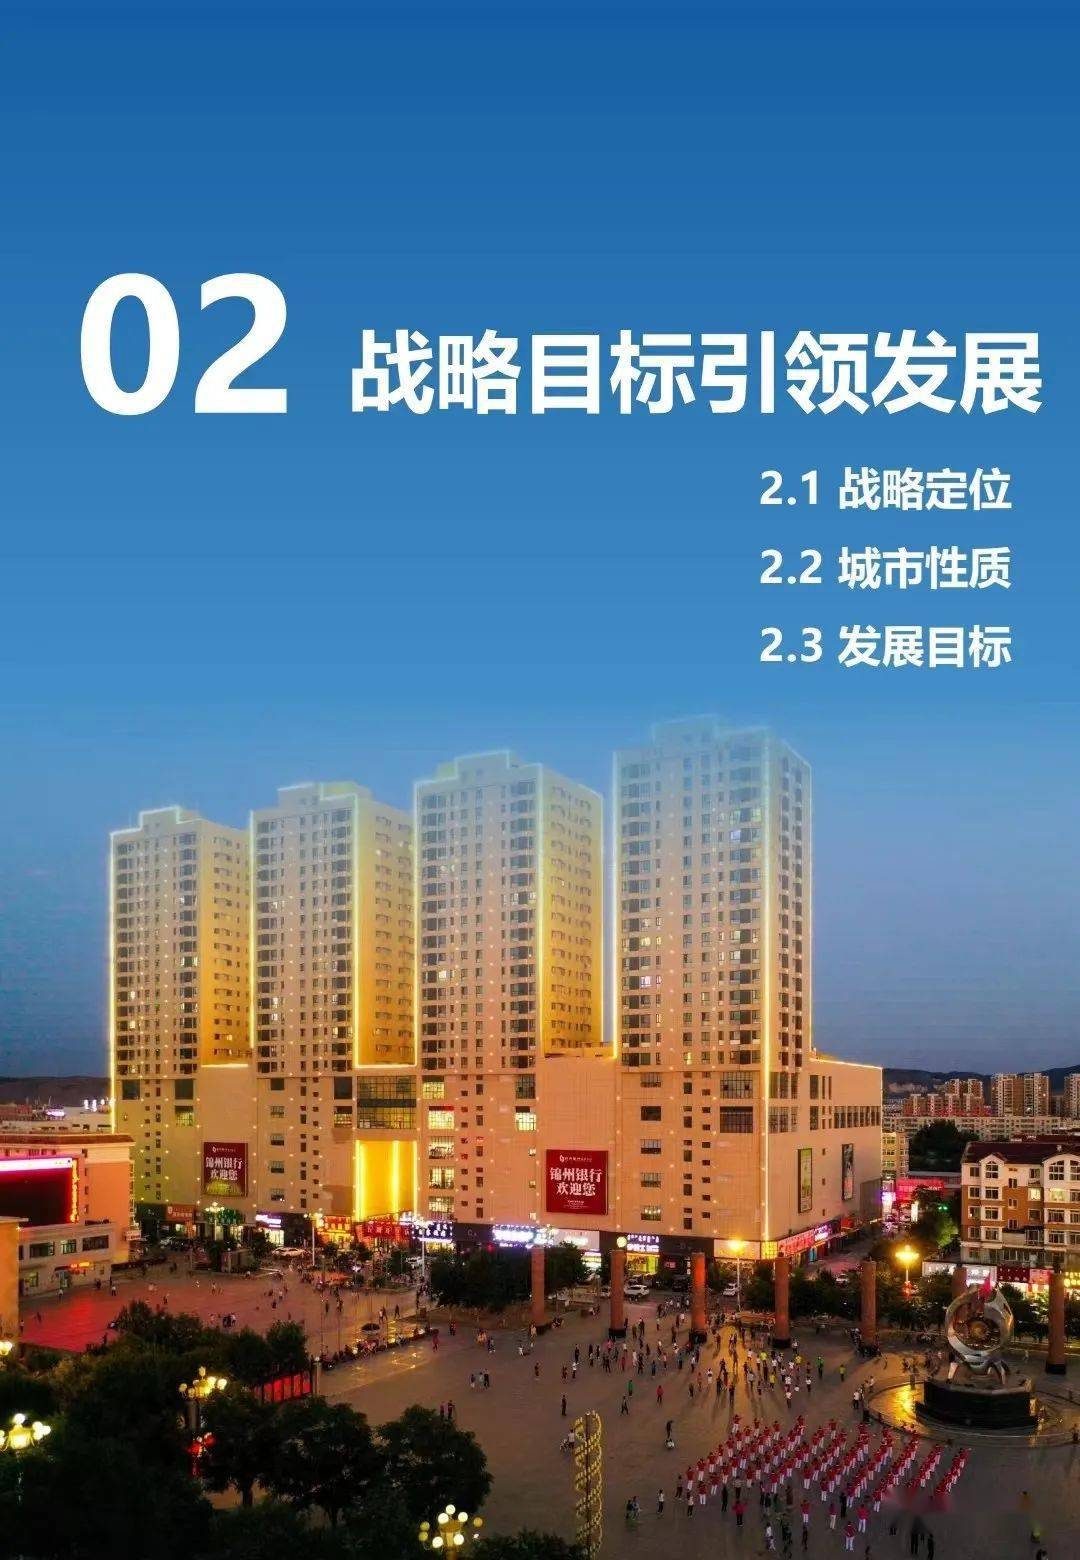 阜蒙县城区规划图片